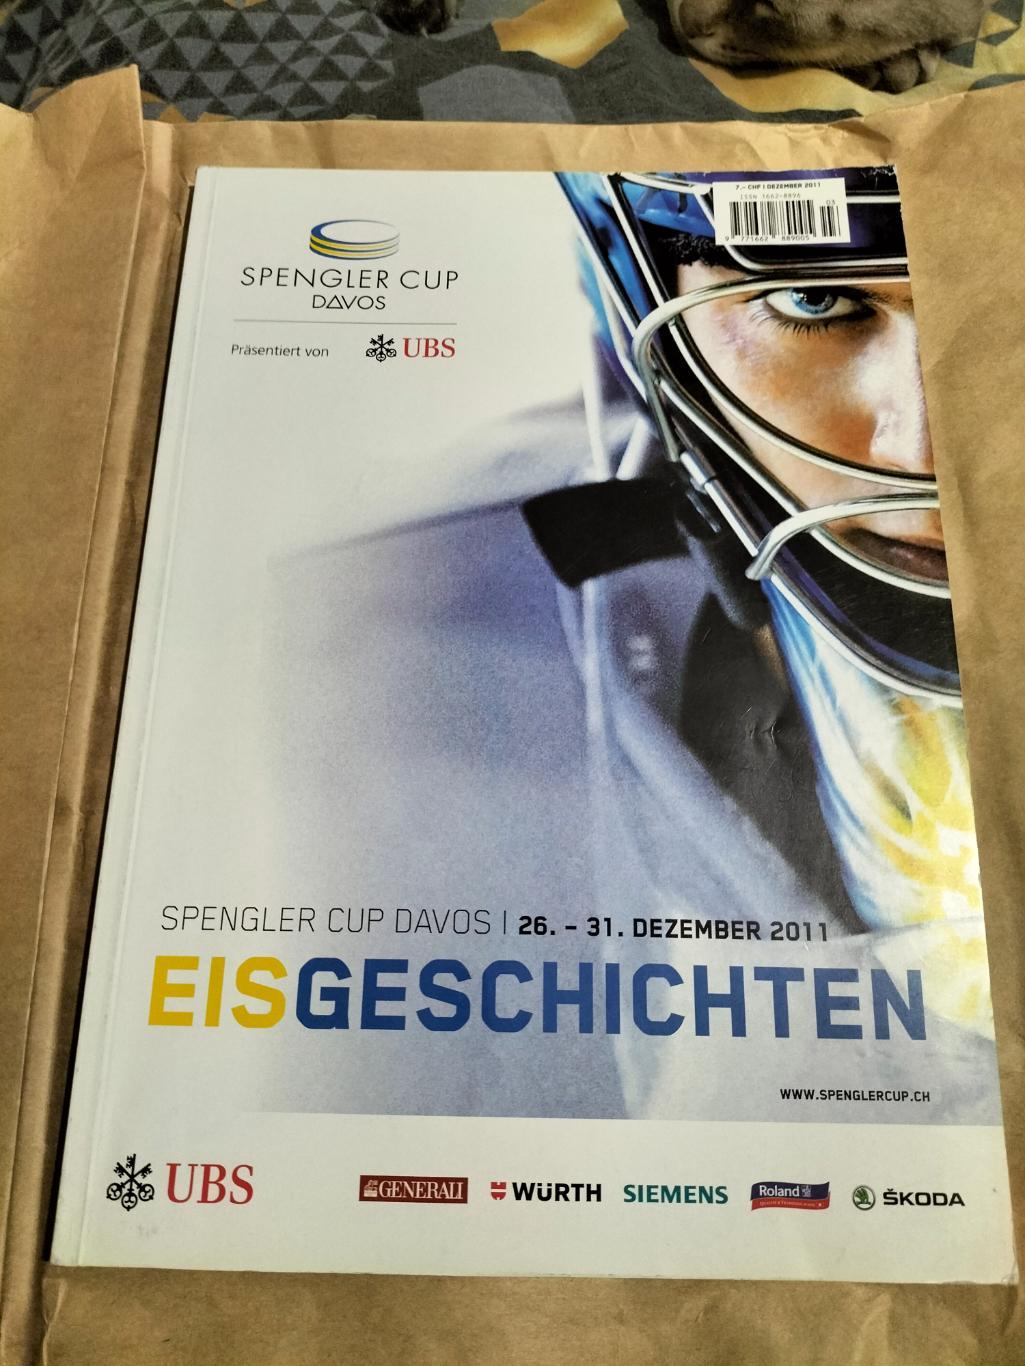 Официальная журнал кубка Шпенглера -2011 года.